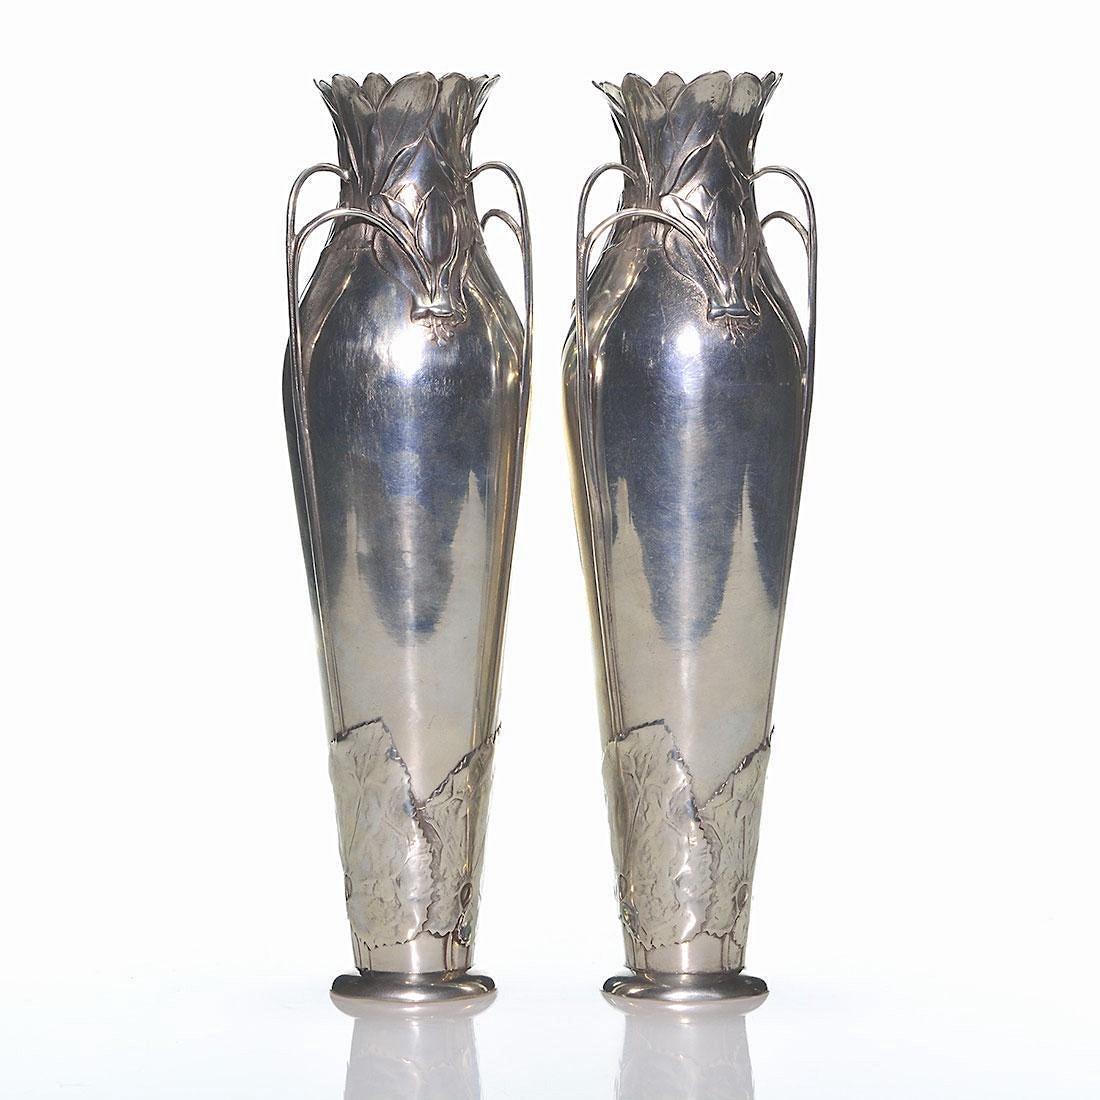 20th Century Antique Kayserzinn Jugendstil Vase Pair, 1898-1900